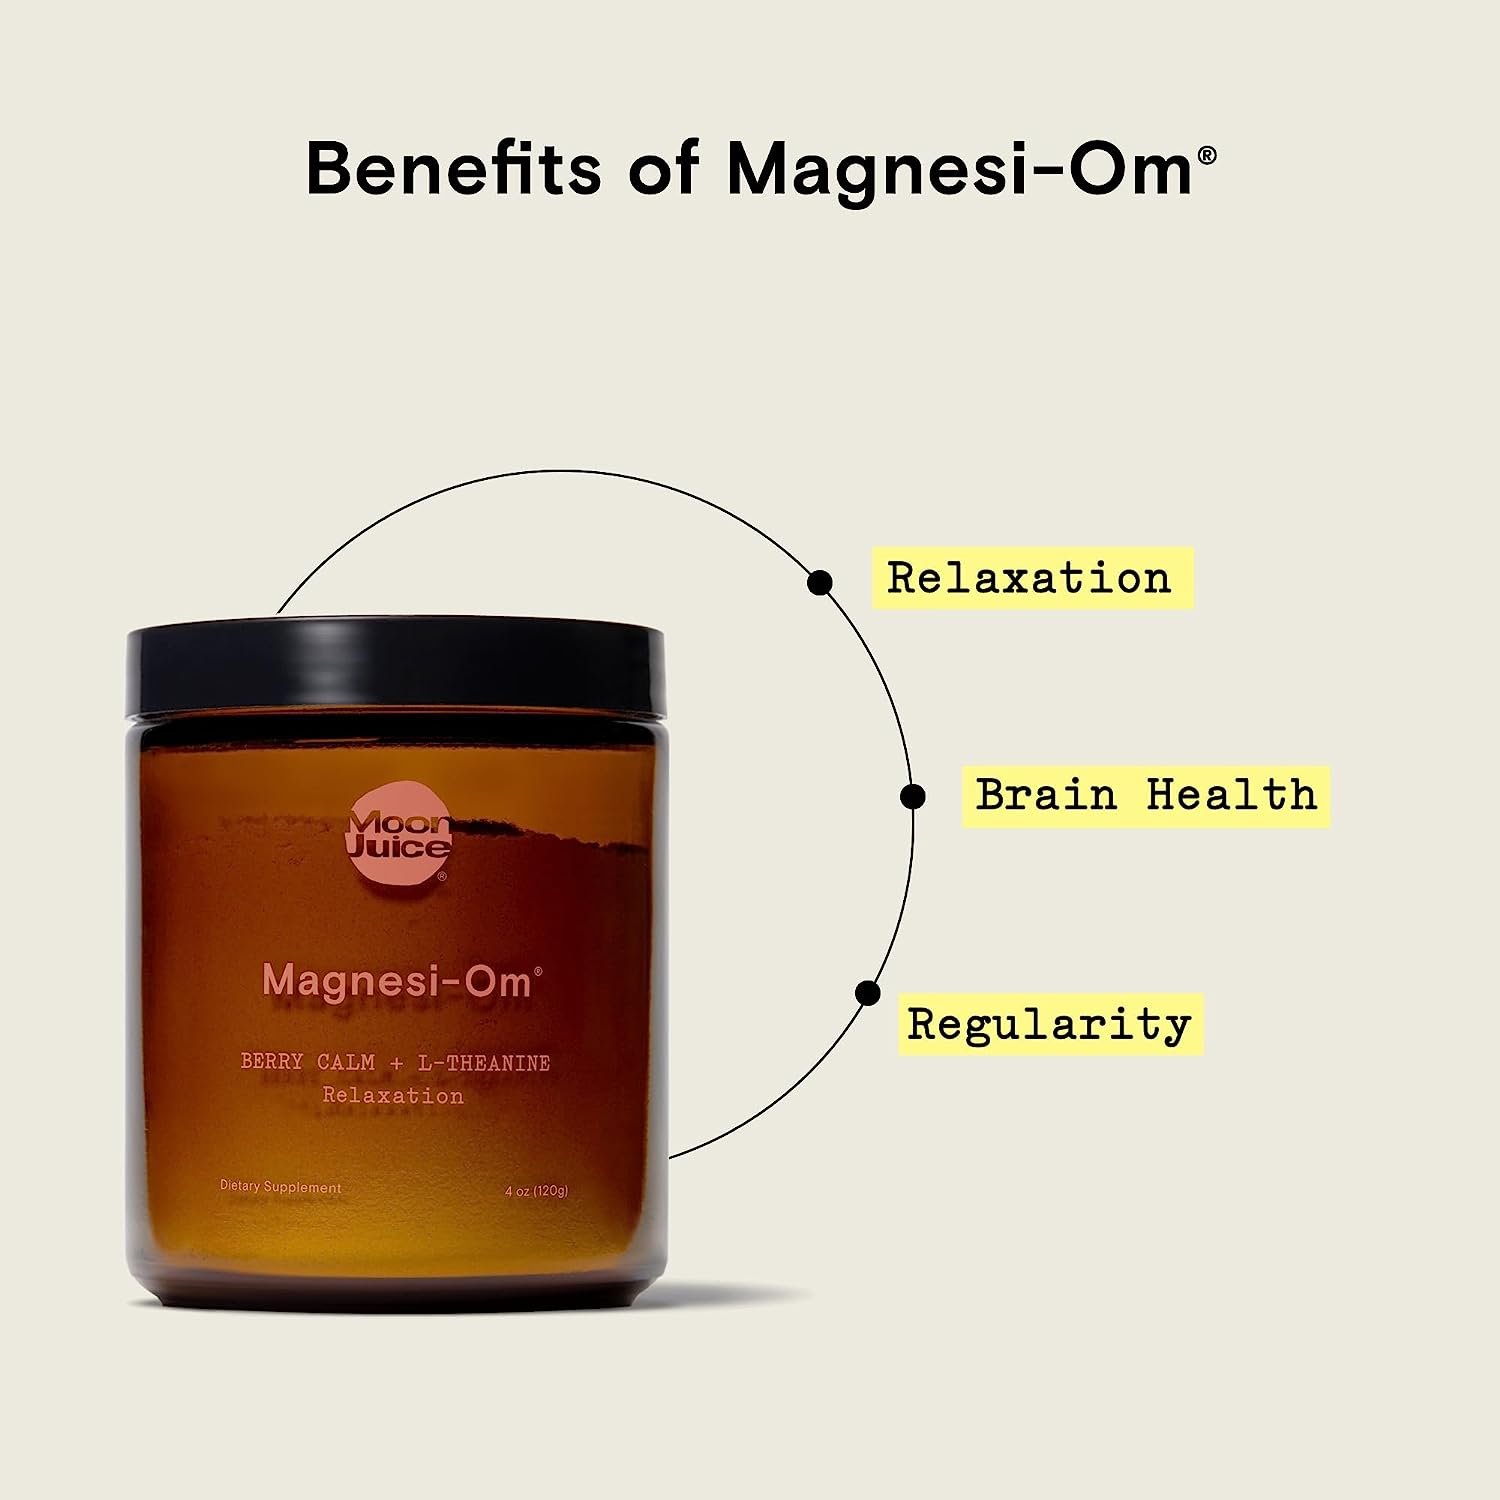 Moon Juice Magnesi-om